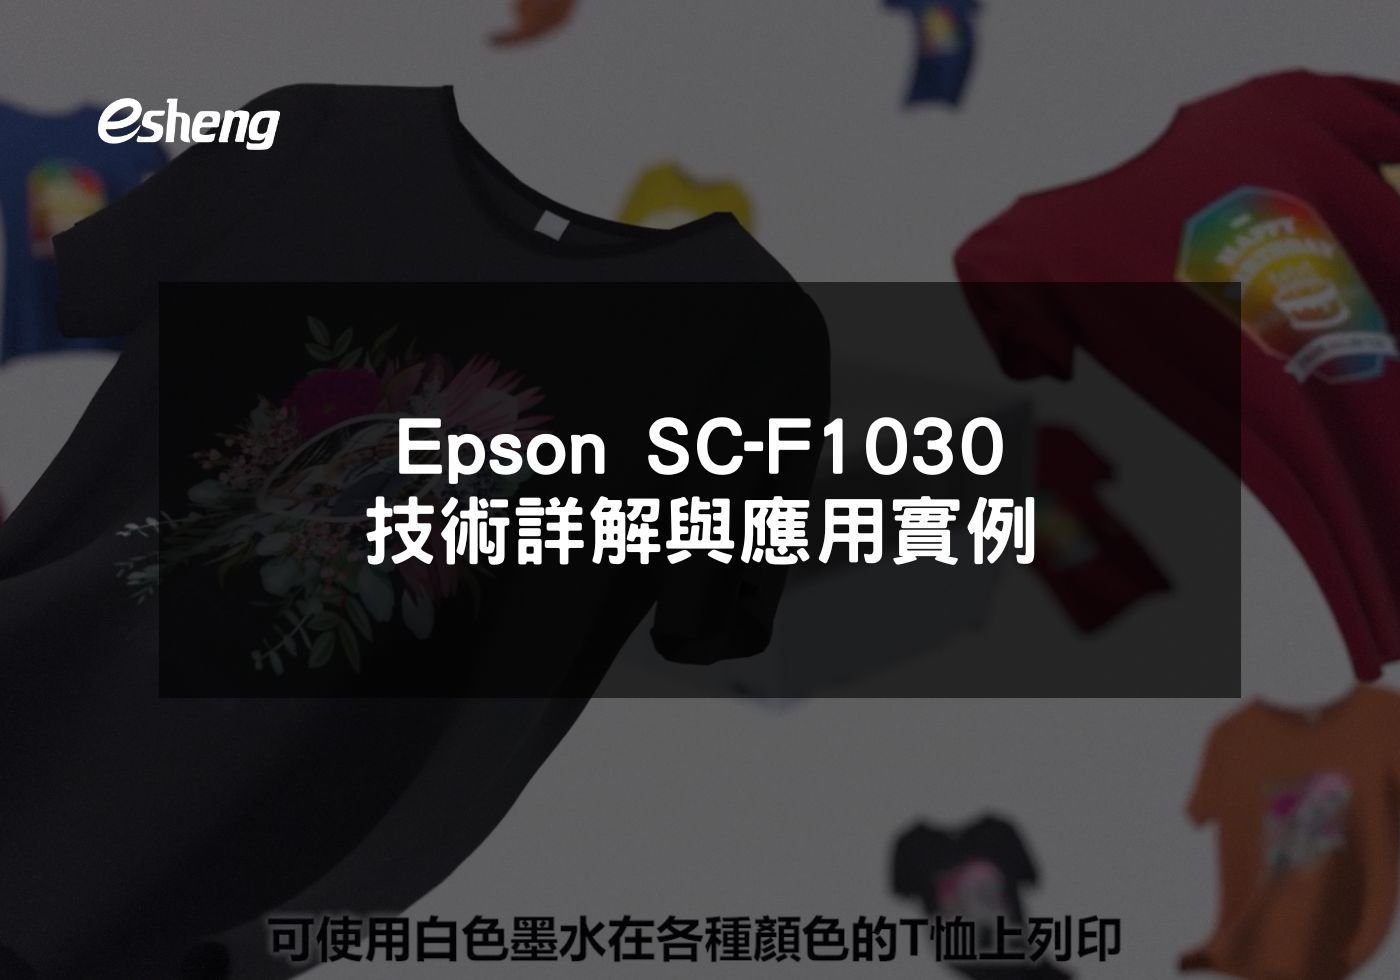 您目前正在查看 Epson SC-F1030 技術詳解與應用實例